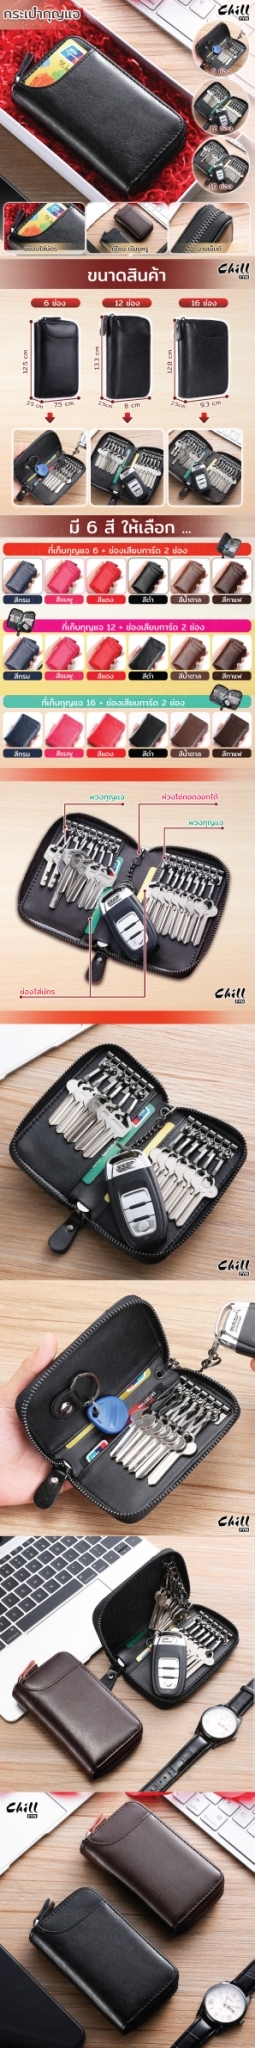 เกี่ยวกับสินค้า สต๊อกในไทย กระเป๋าใส่กุญแจ หนังแท้ หรูพรีเมี่ยม เก็บ กุญแจบ้าน 6-16 key ช่องเก็บบัตร 2 ช่อง กระเป๋าเก็บกุญแจ กระเป๋ากุญแจ รีโมทย์ Chill Fyn